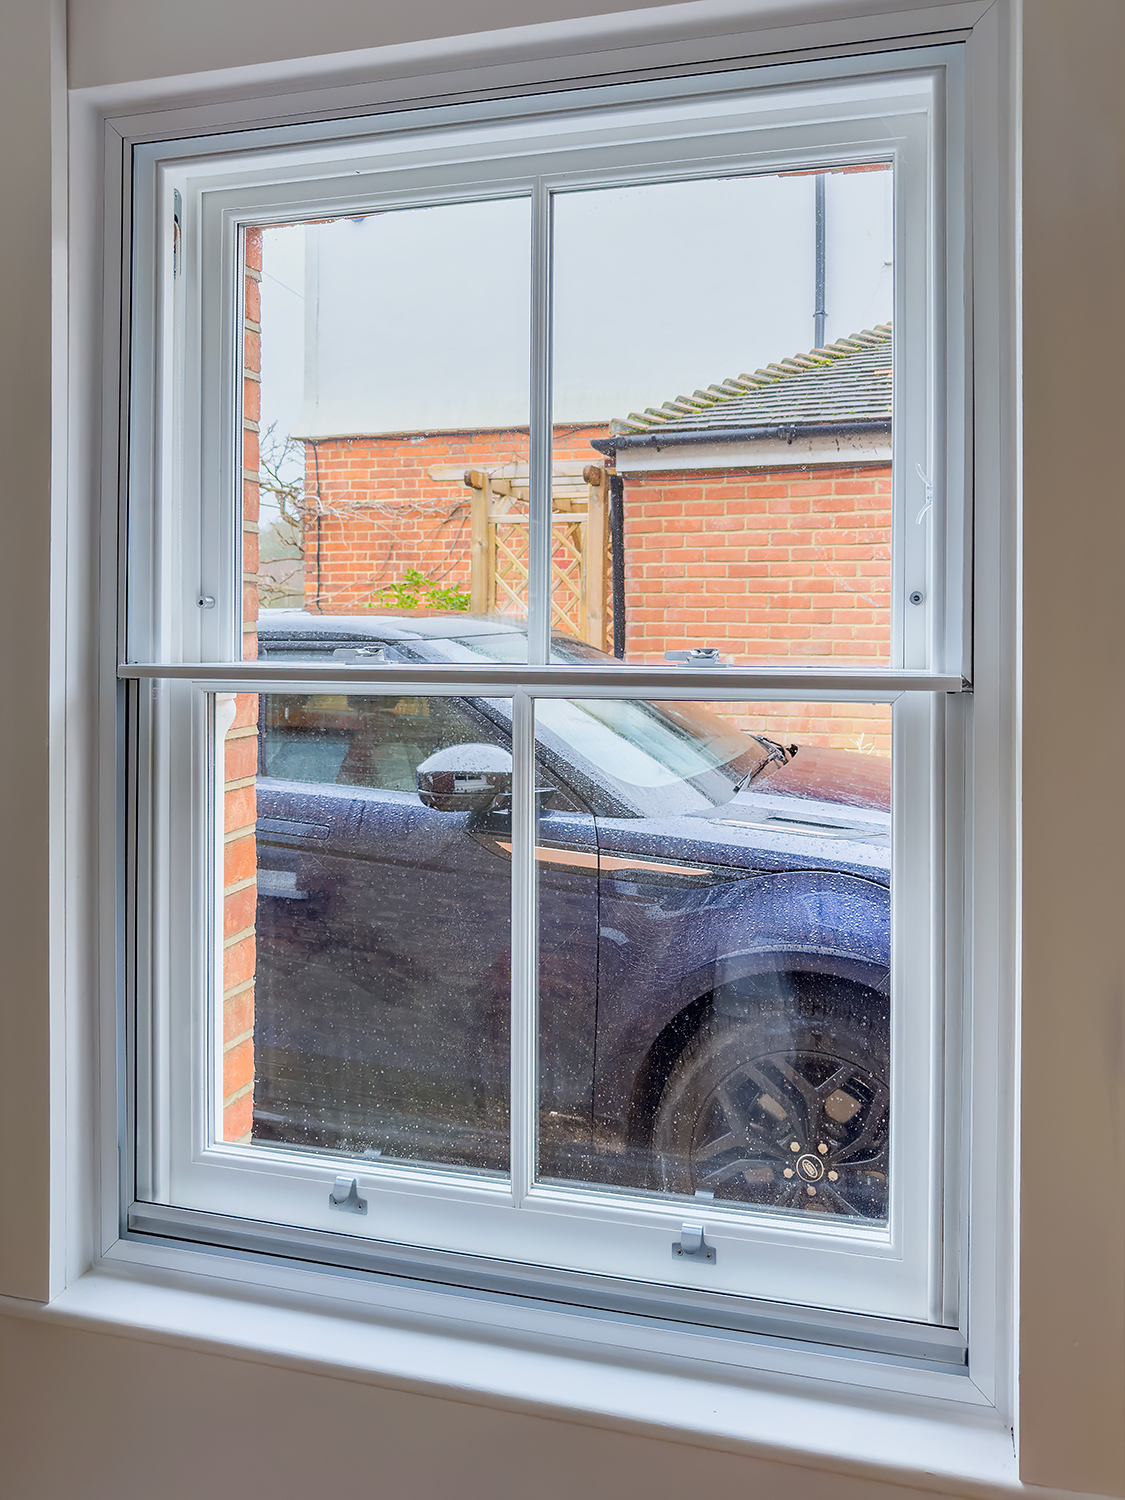 Secondary Glazing window with a sash window